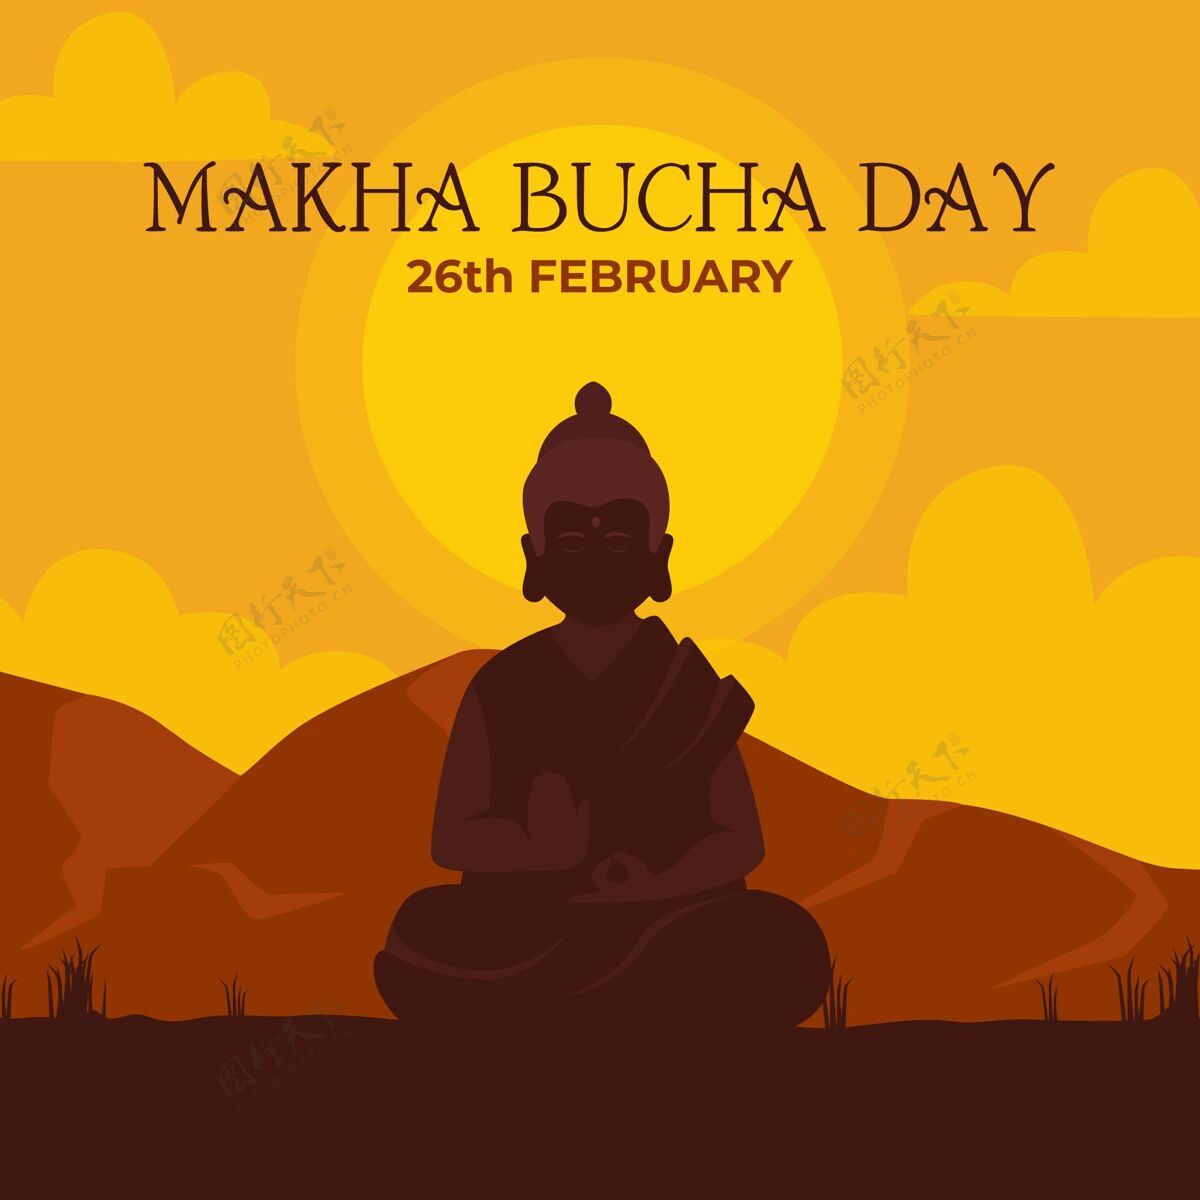 插图Makhabuchaday插图庆典平面佛教